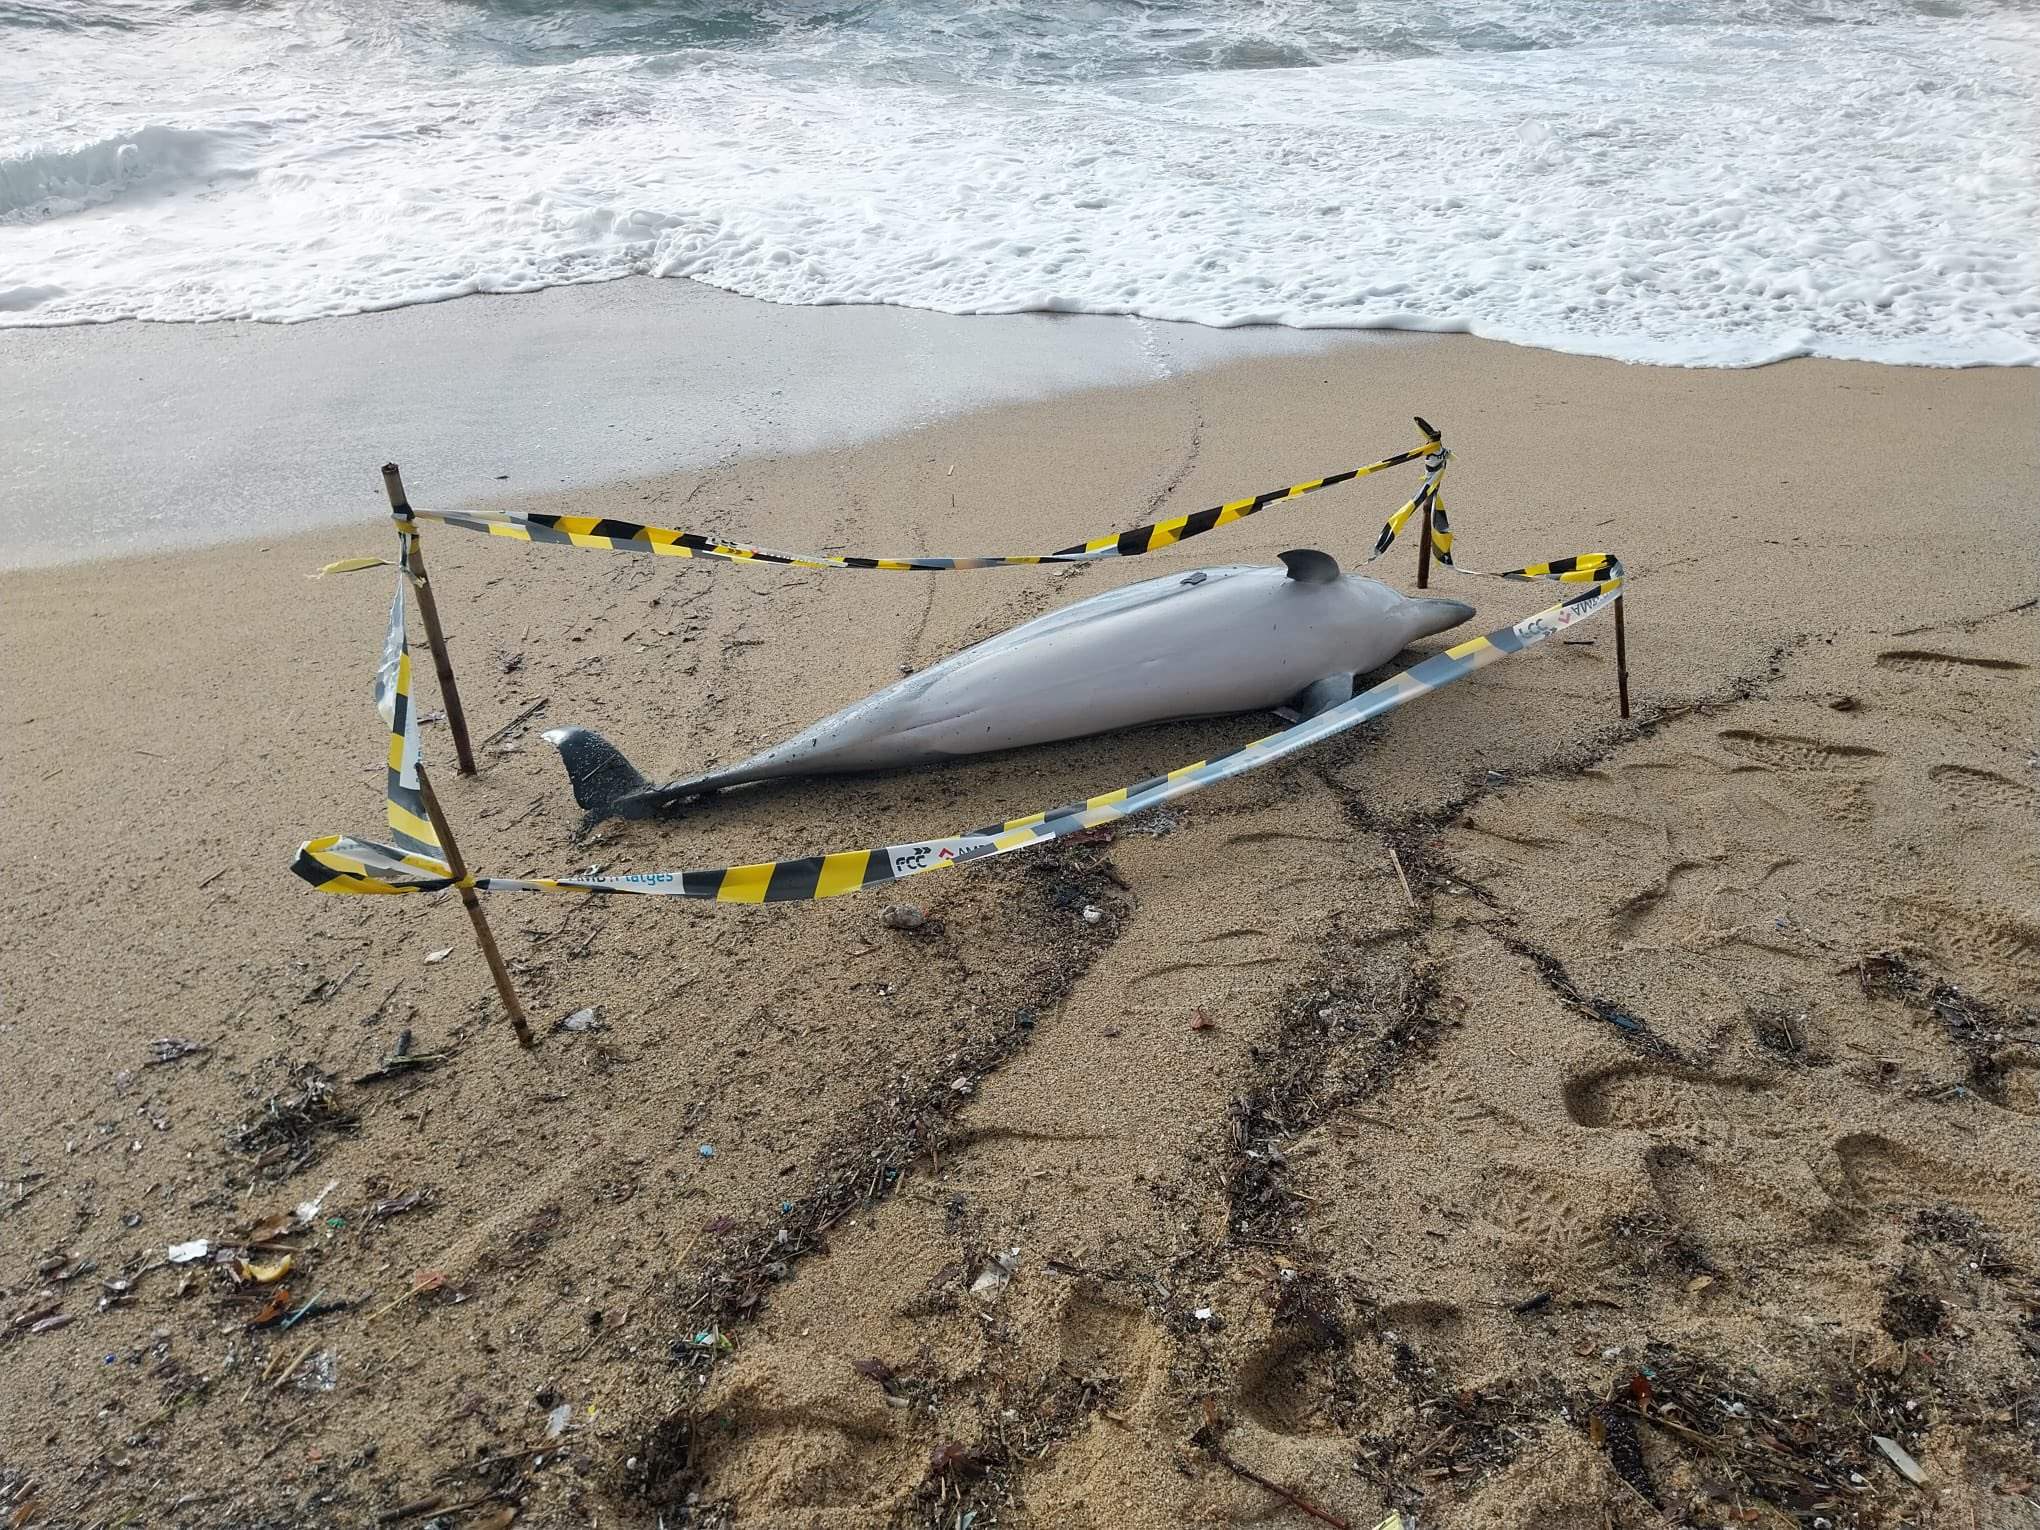 Apareixen dos dofins morts en un curt interval de temps al Masnou i a Badalona